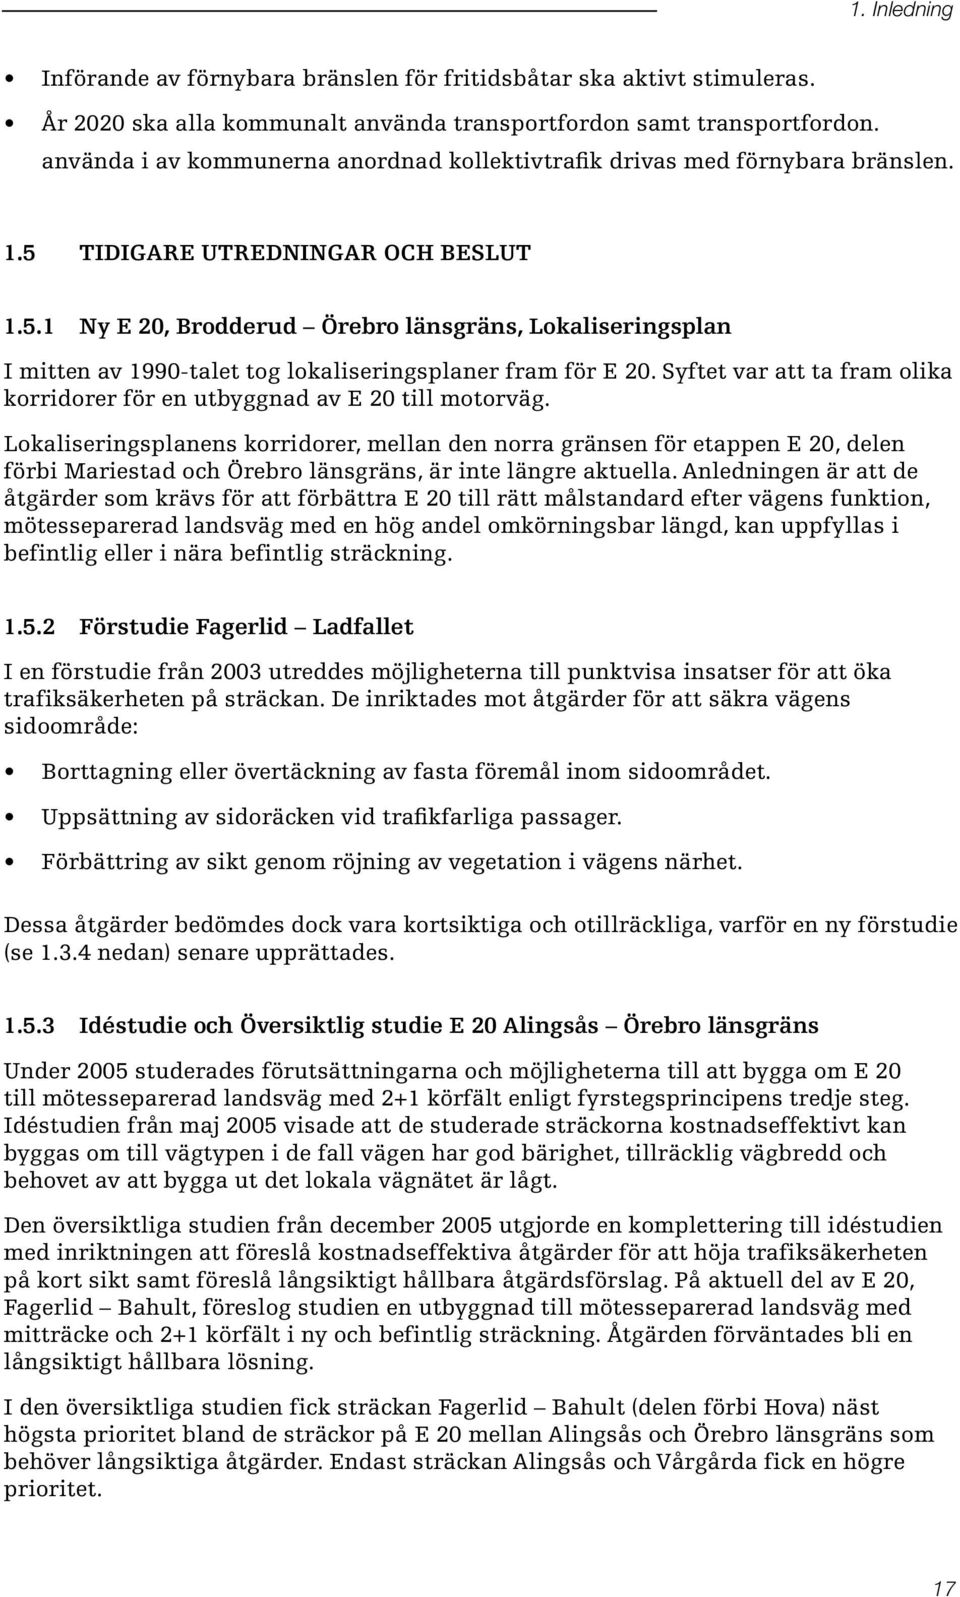 Tidigare utredningar och beslut 1.5.1 Ny E 20, Brodderud Örebro länsgräns, Lokaliseringsplan I mitten av 1990 talet tog lokaliseringsplaner fram för E 20.